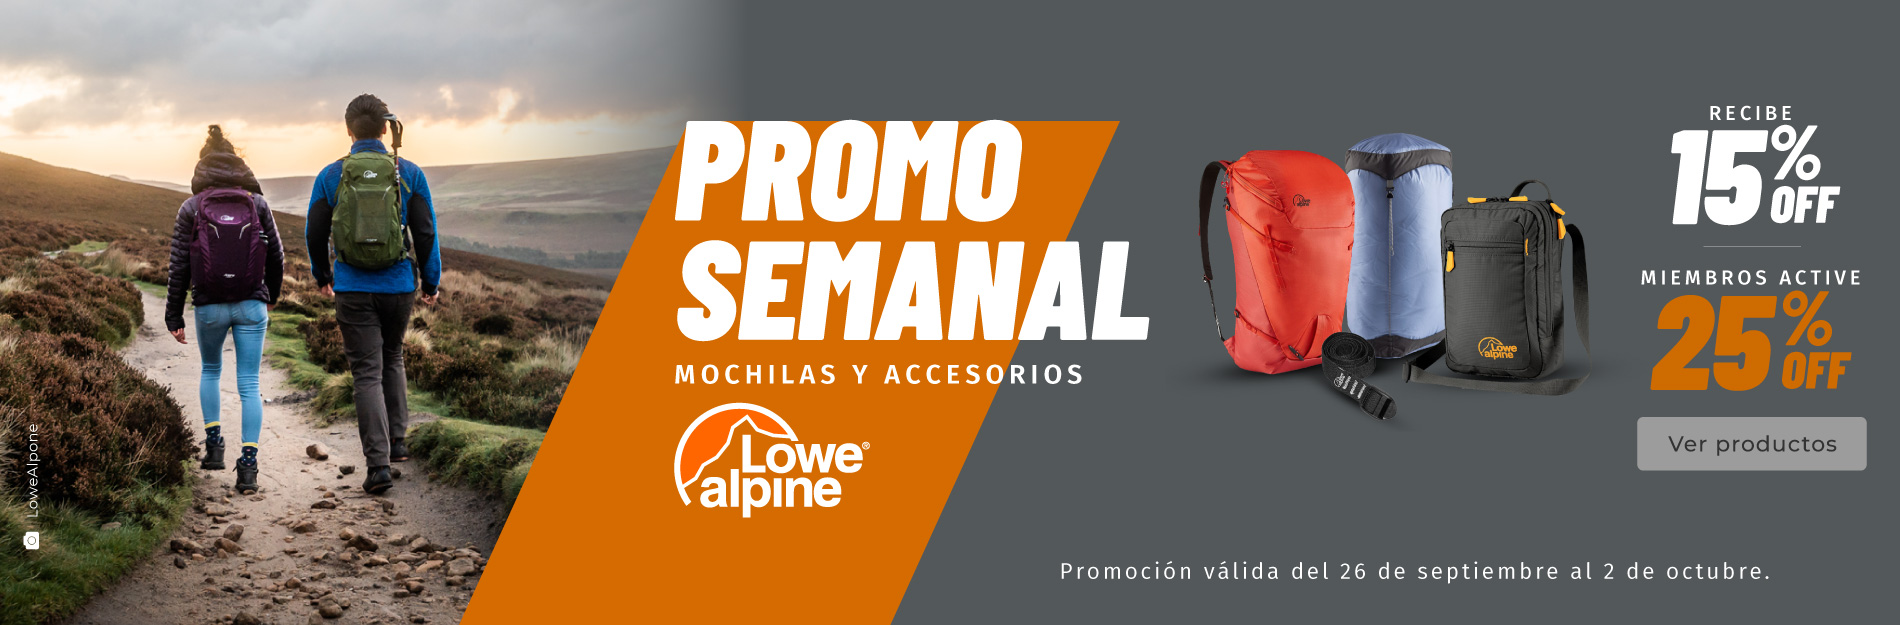 Promoción semanal Chile: Mochilas y accesorios - Lowe Alpine.